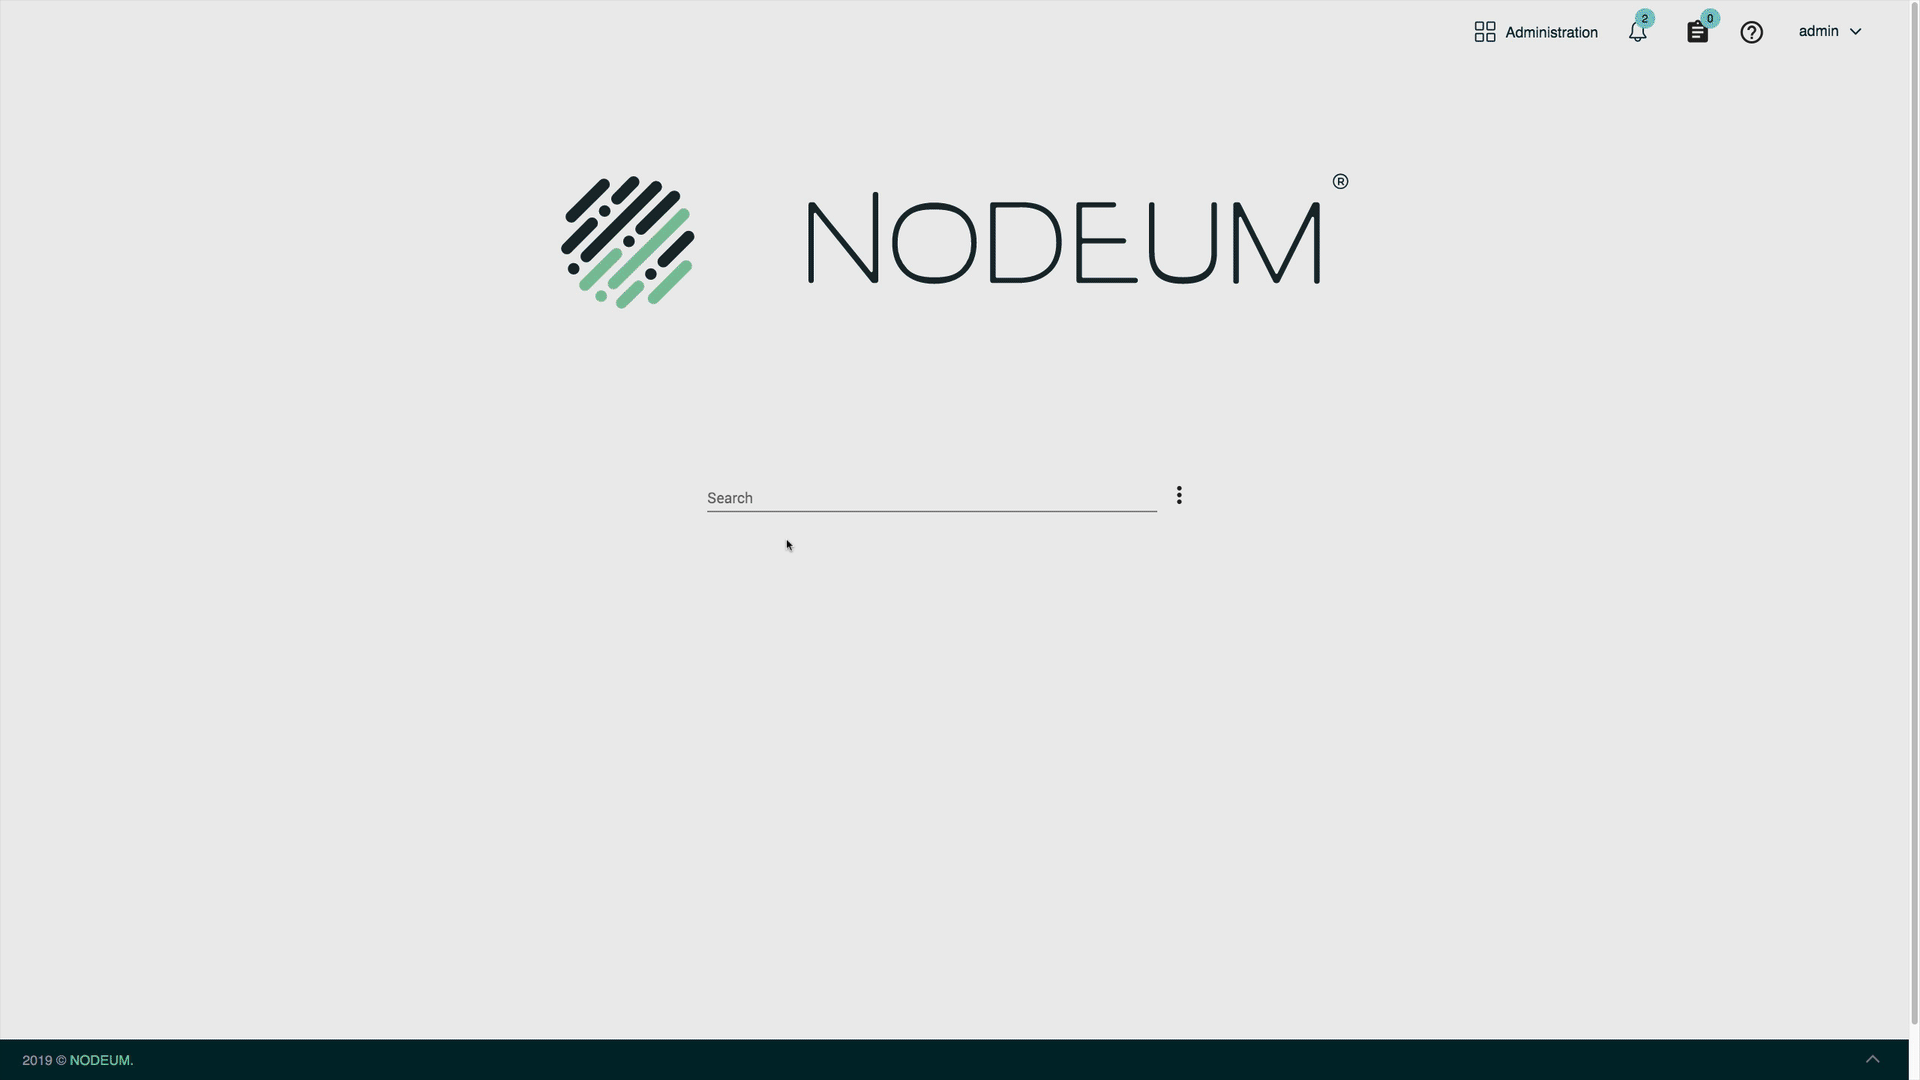 Nodeum - Product Shoot - Images Data Enrichment